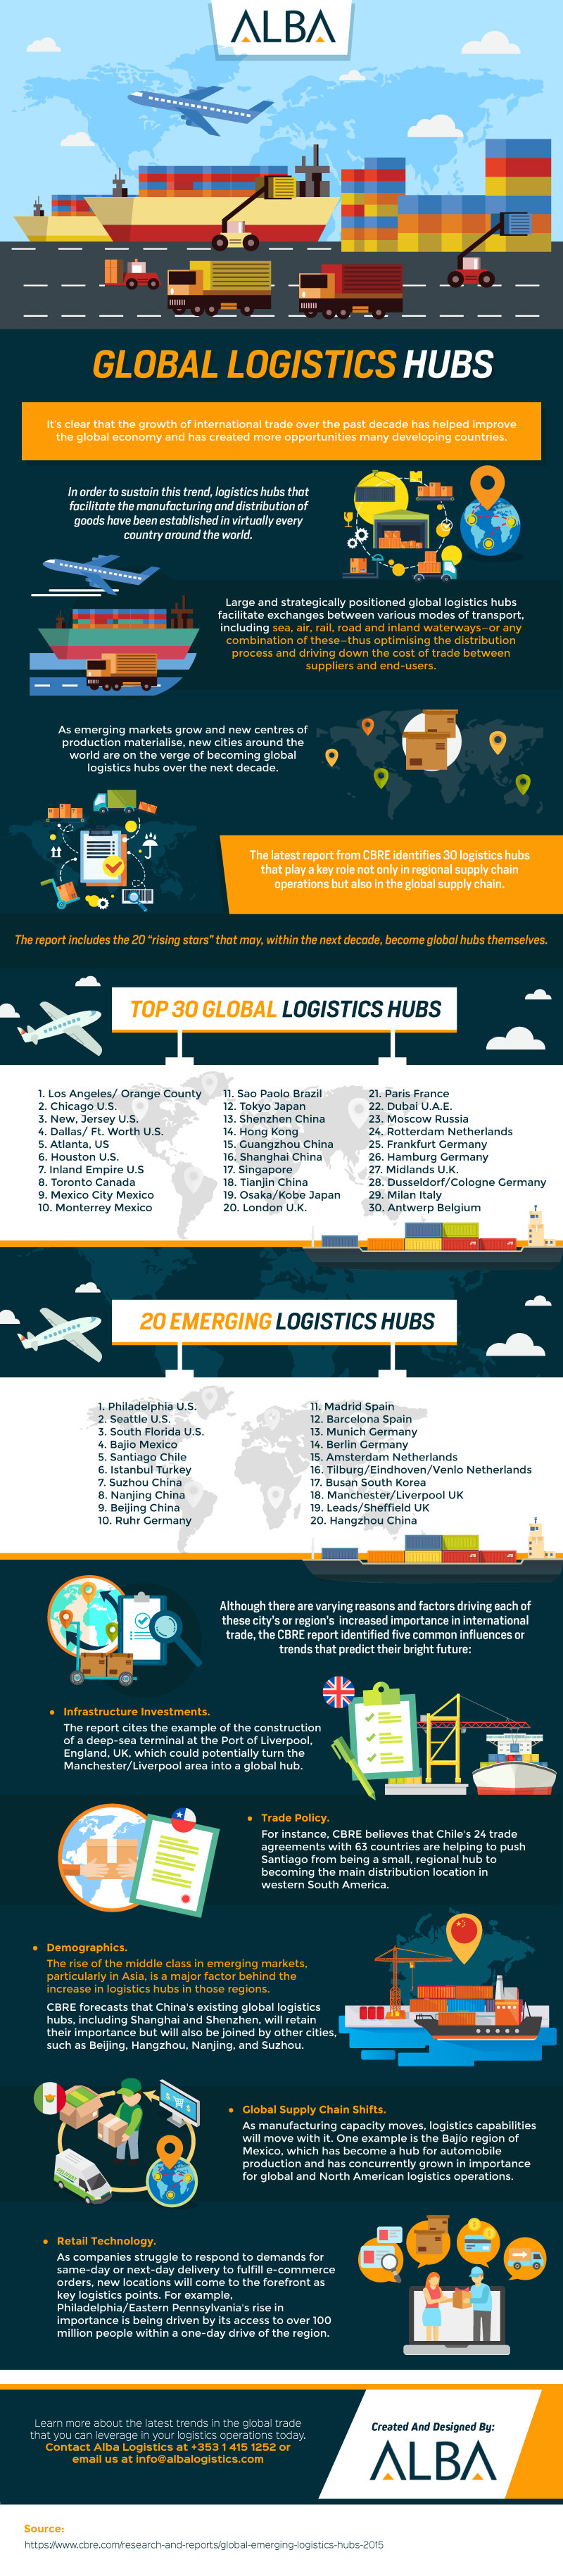 Global Logistics Hubs